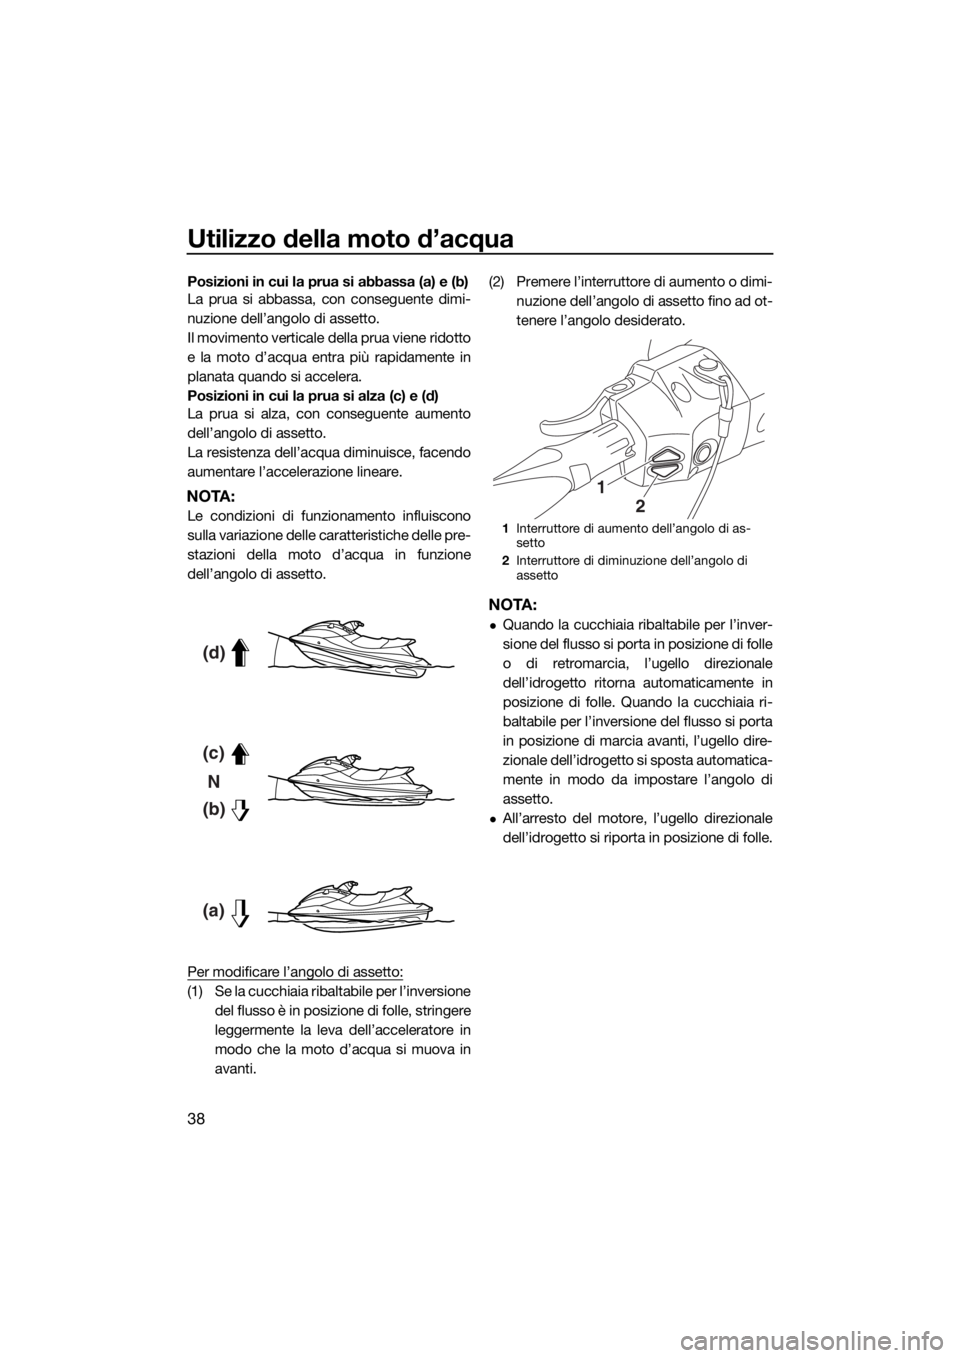 YAMAHA FX SVHO 2016  Manuale duso (in Italian) Utilizzo della moto d’acqua
38
Posizioni in cui la prua si abbassa (a) e (b)
La prua si abbassa, con conseguente dimi-
nuzione dell’angolo di assetto.
Il movimento verticale della prua viene ridot